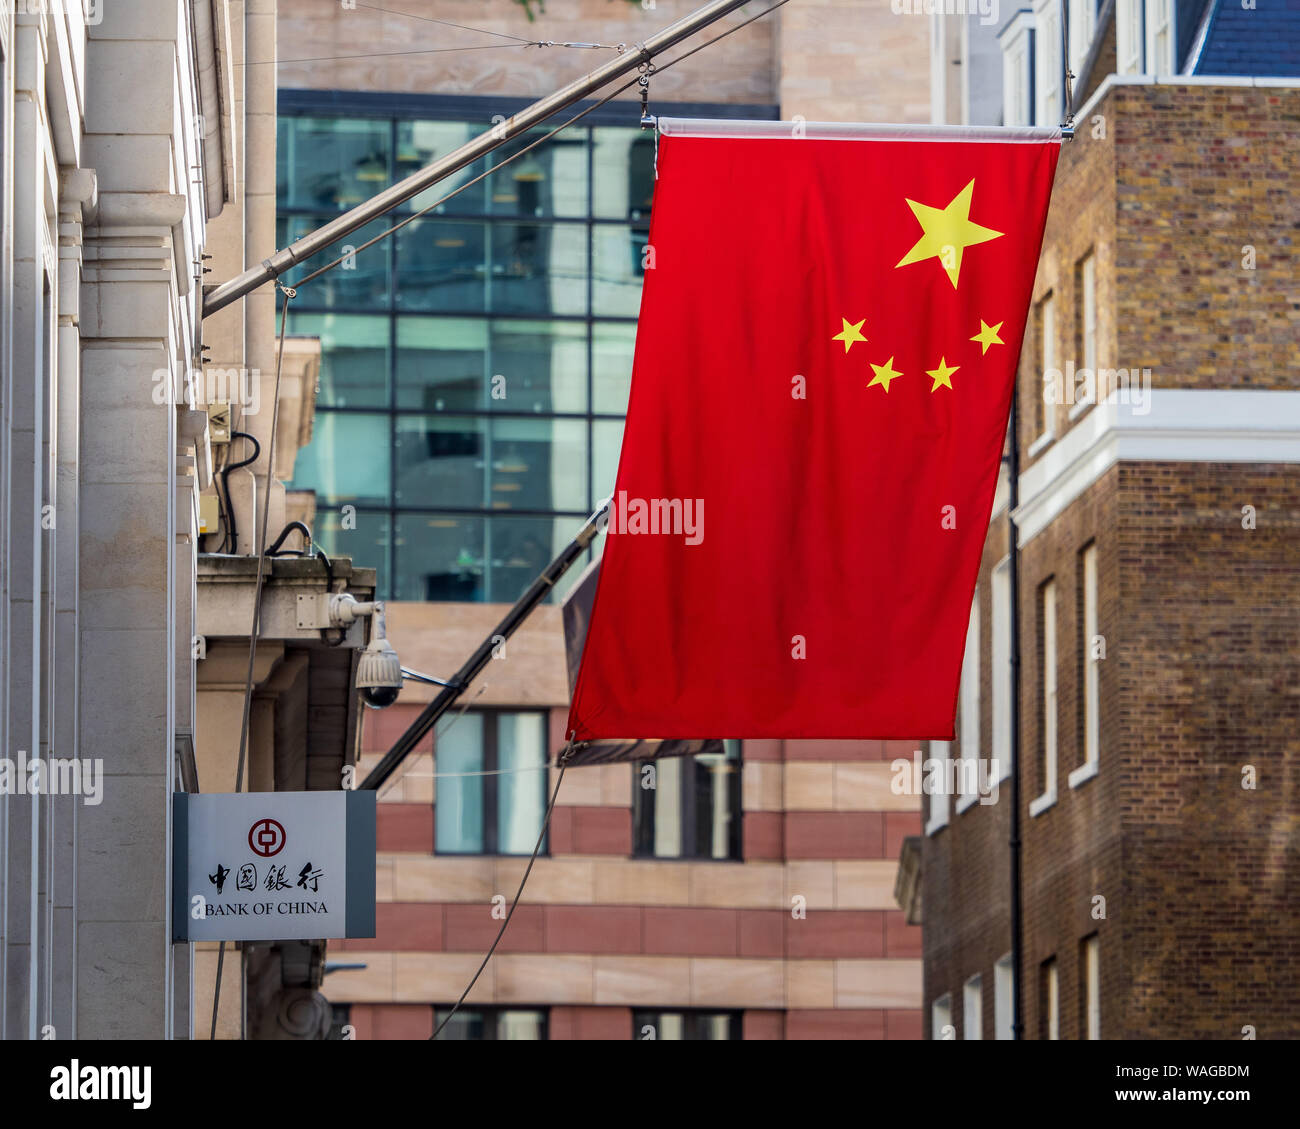 Chinesische Flaggen ausserhalb der Bank von China London - Chinesische Flaggen markieren eine wachsende Präsenz chinesischer Banken in der Stadt London Financial District. Stockfoto